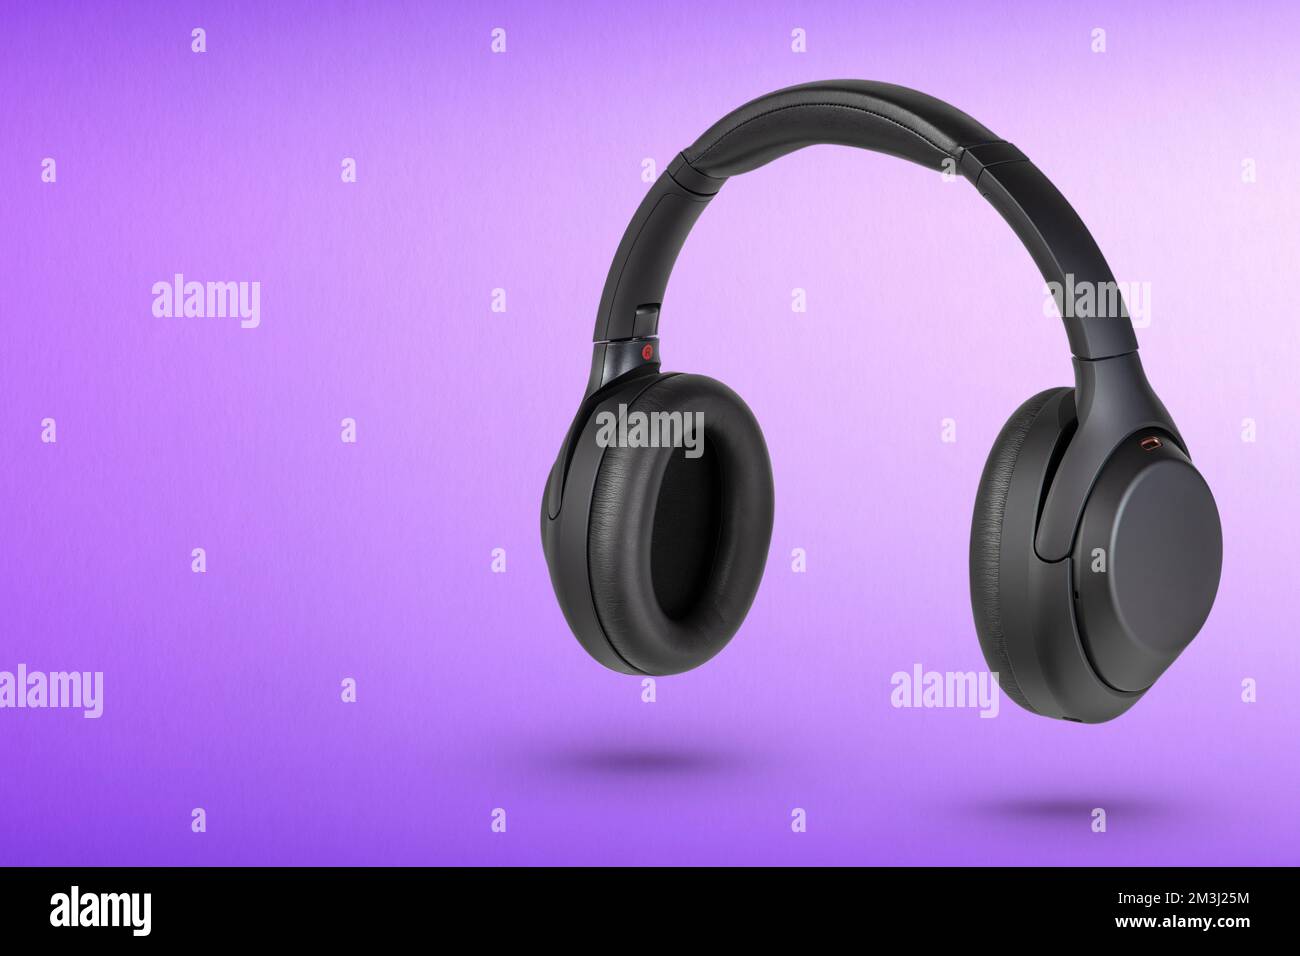 Kopfhörer auf lila Hintergrund. Kabellose Kopfhörer in Schwarz, hohe Qualität, für Werbung oder Produktkatalog. Stockfoto